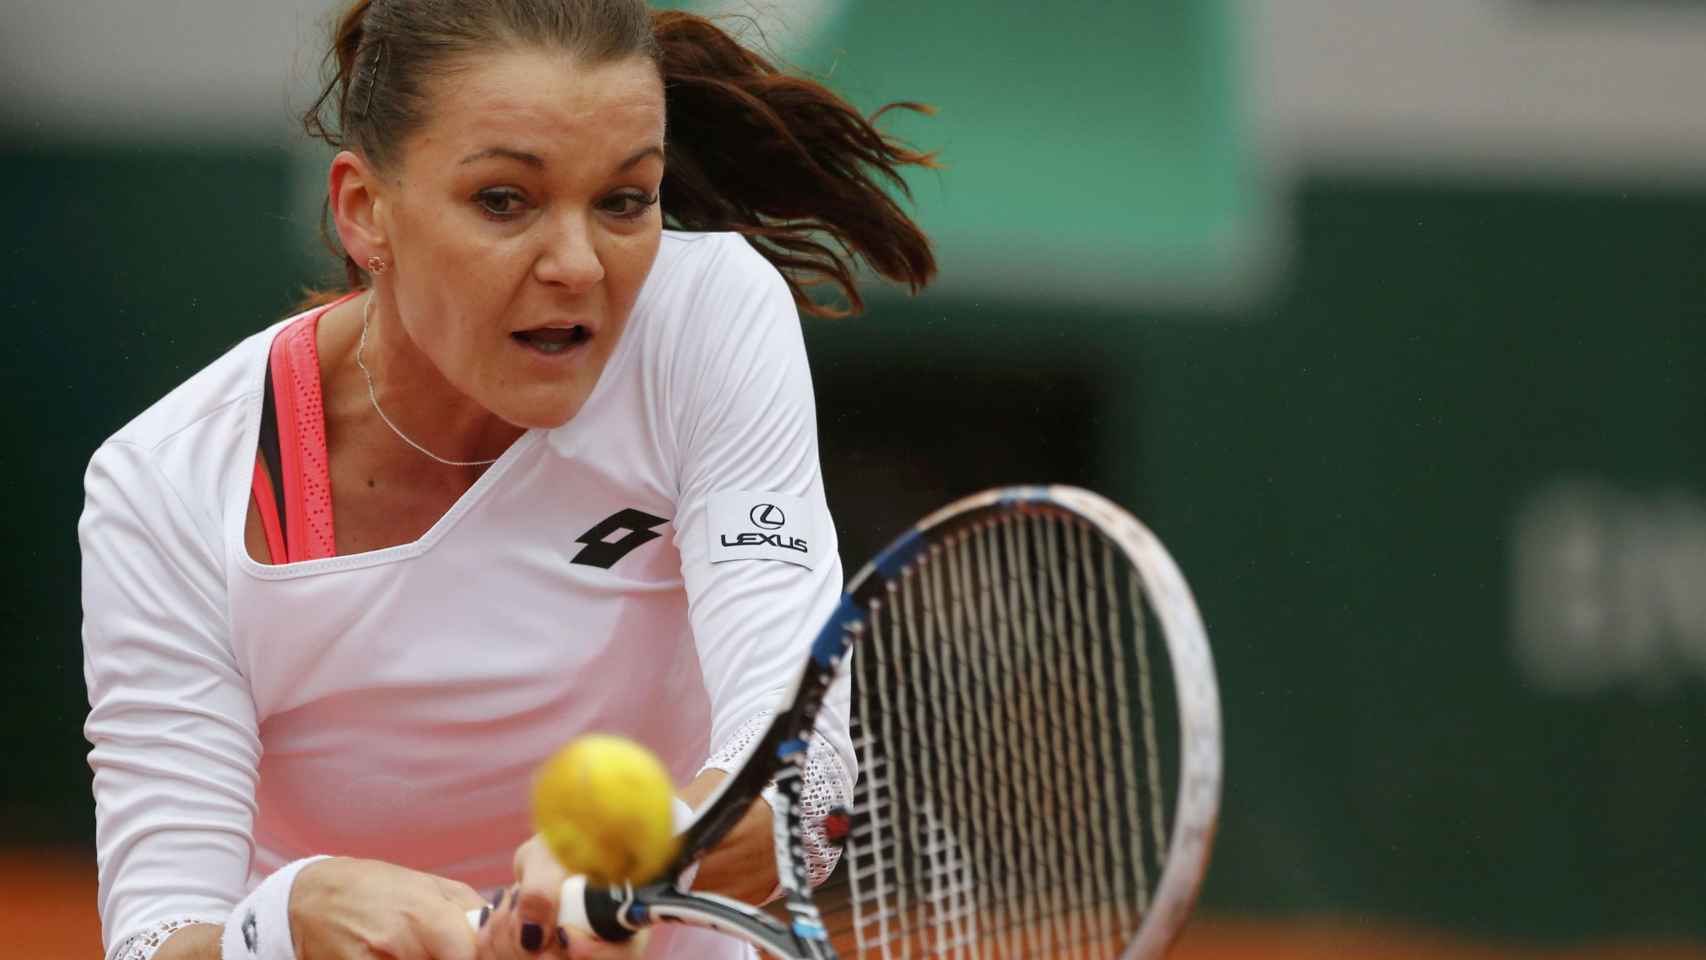 Agnieszka Radwanska golpea la pelota.